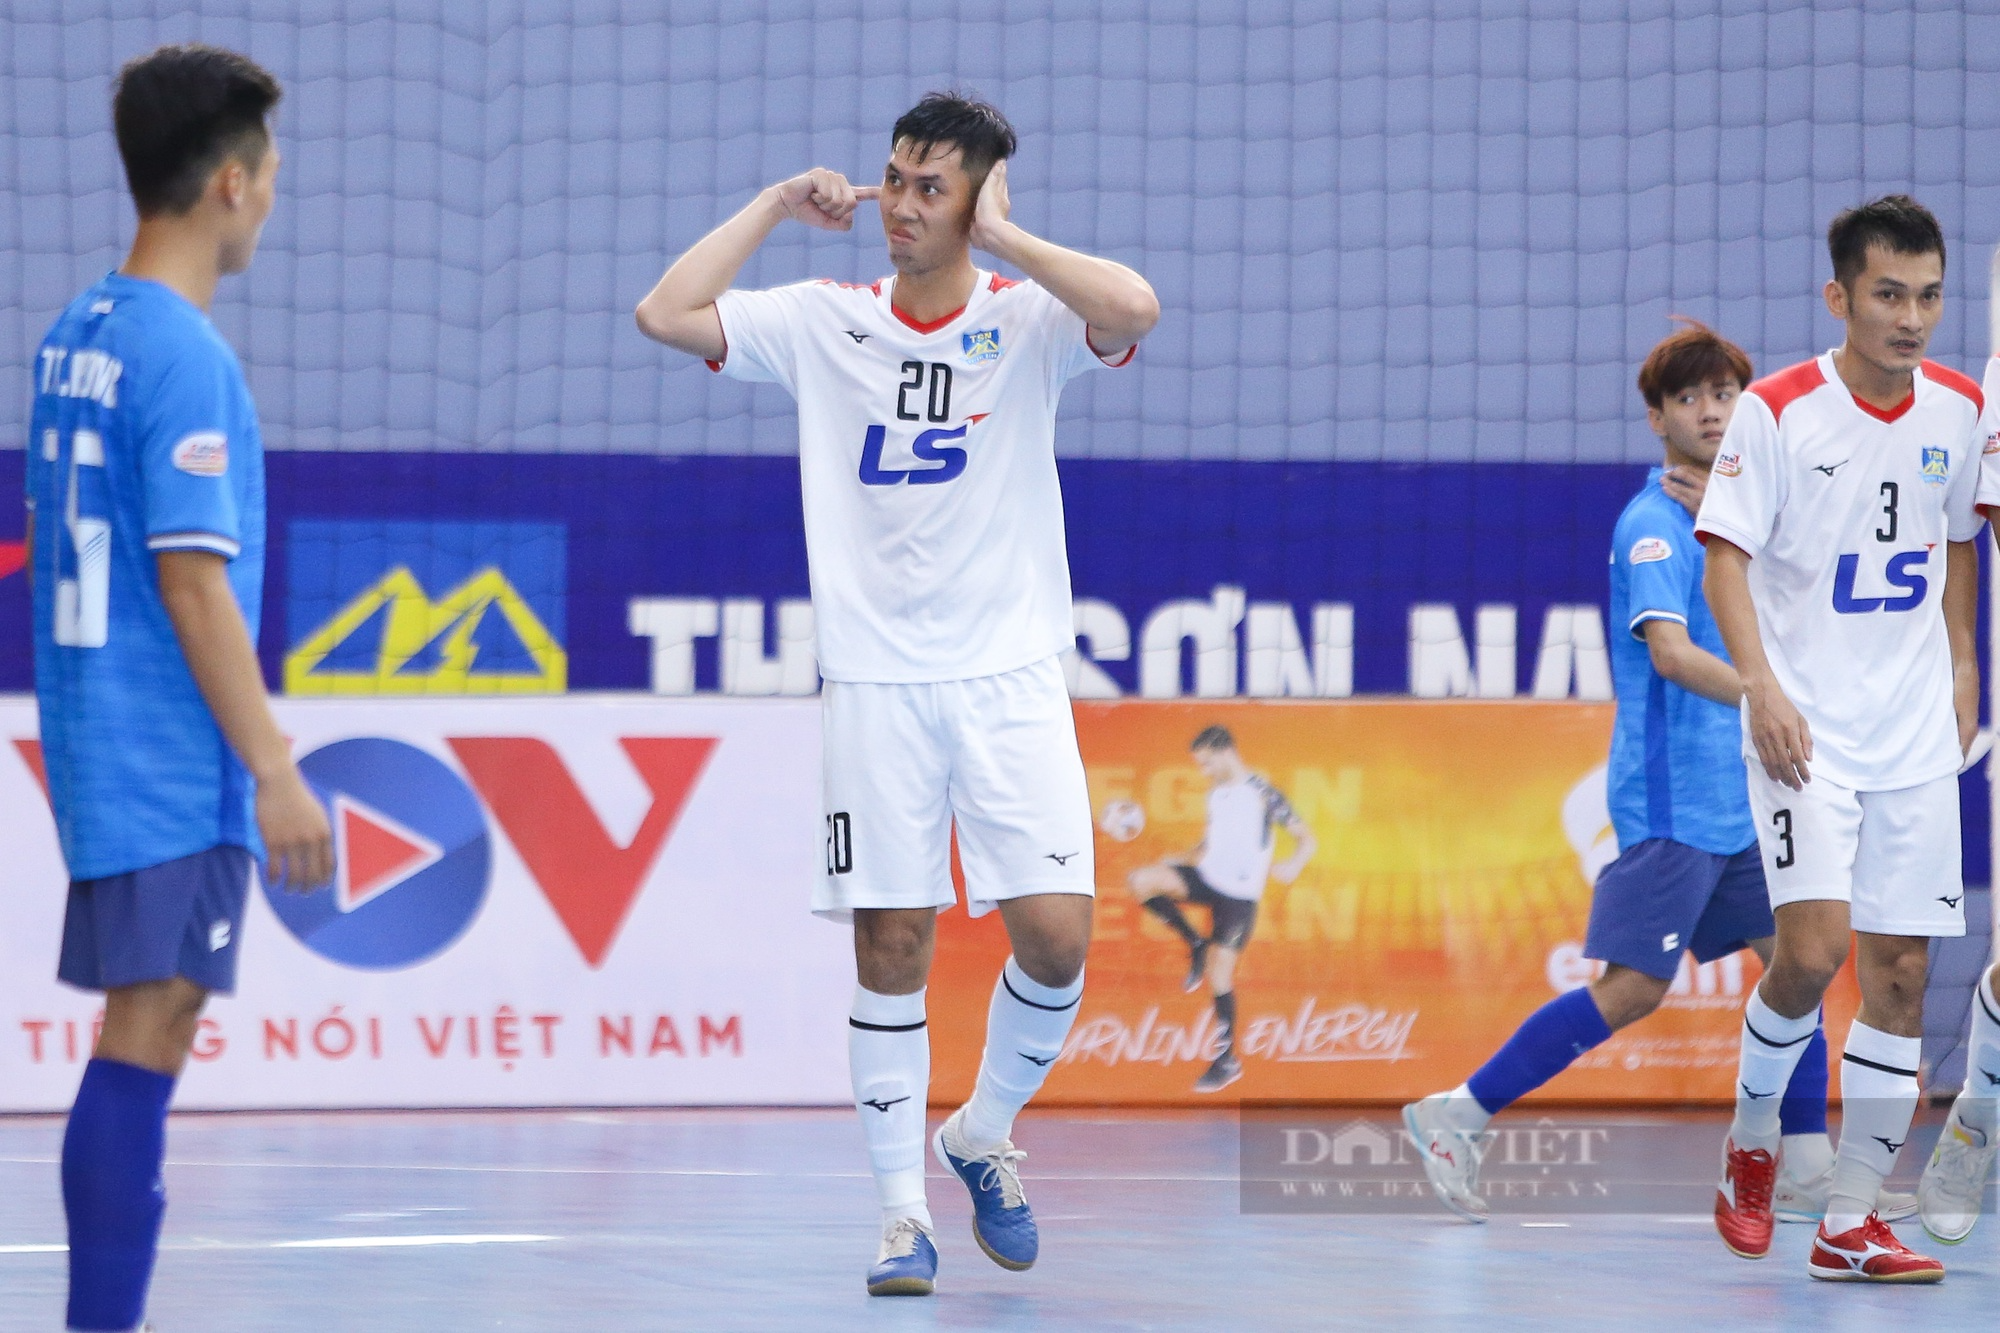 Lăng mạ trọng tài, ngôi sao World Cup Nguyễn Minh Trí bị phạt nặng - Ảnh 4.